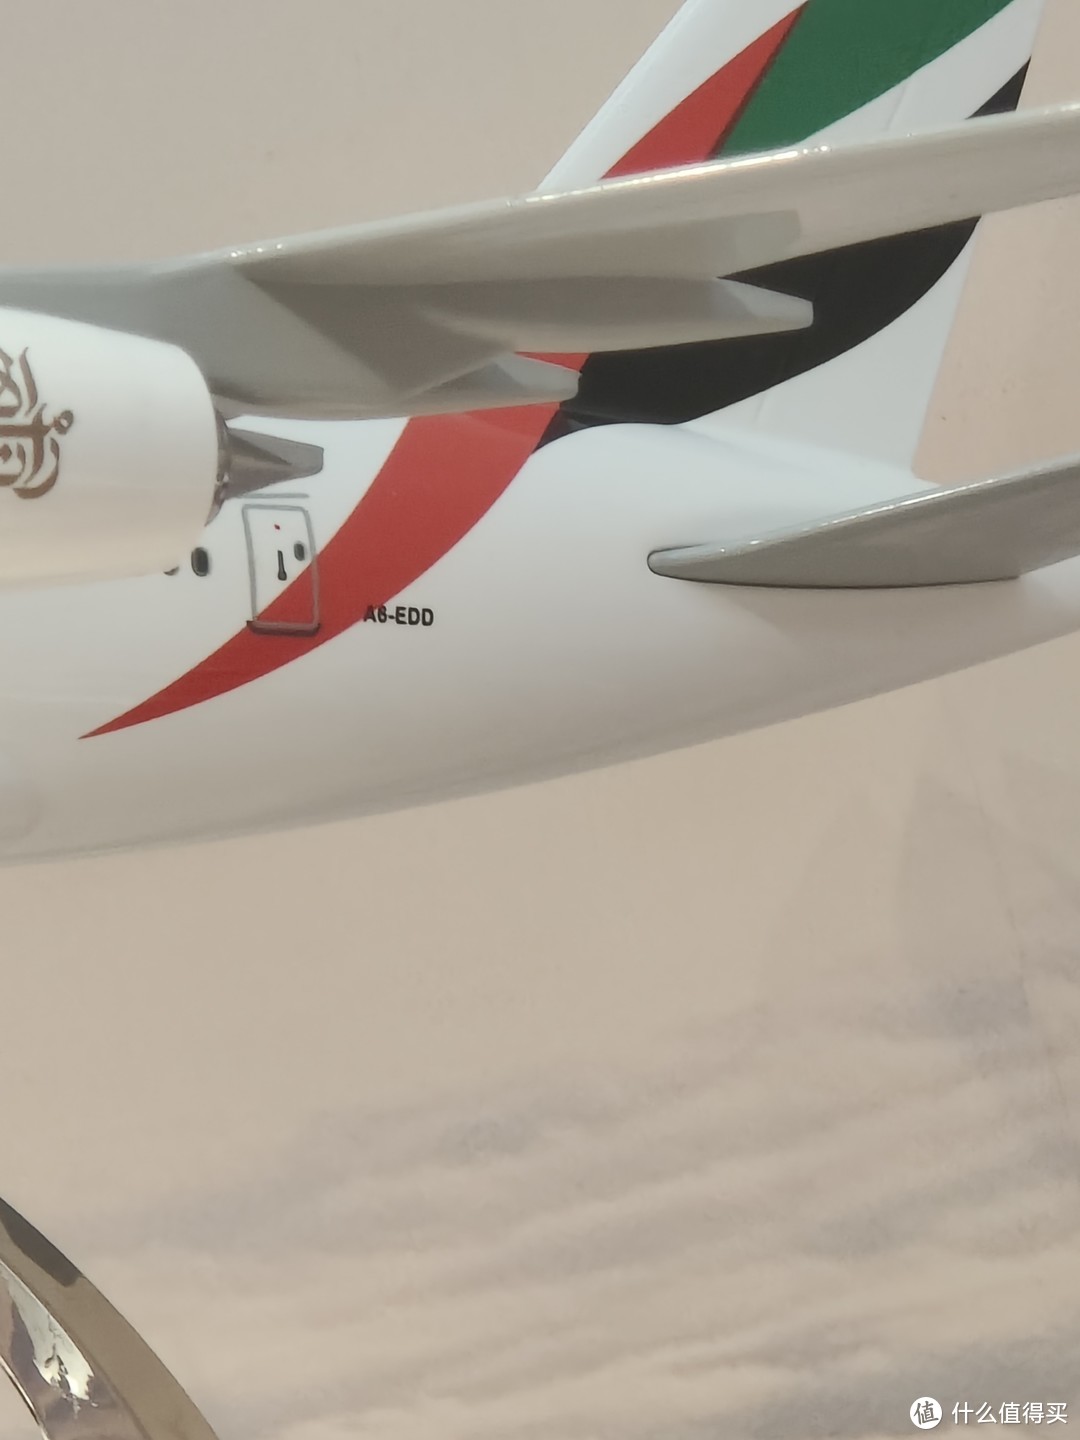 种草国产大飞机c919模型分享